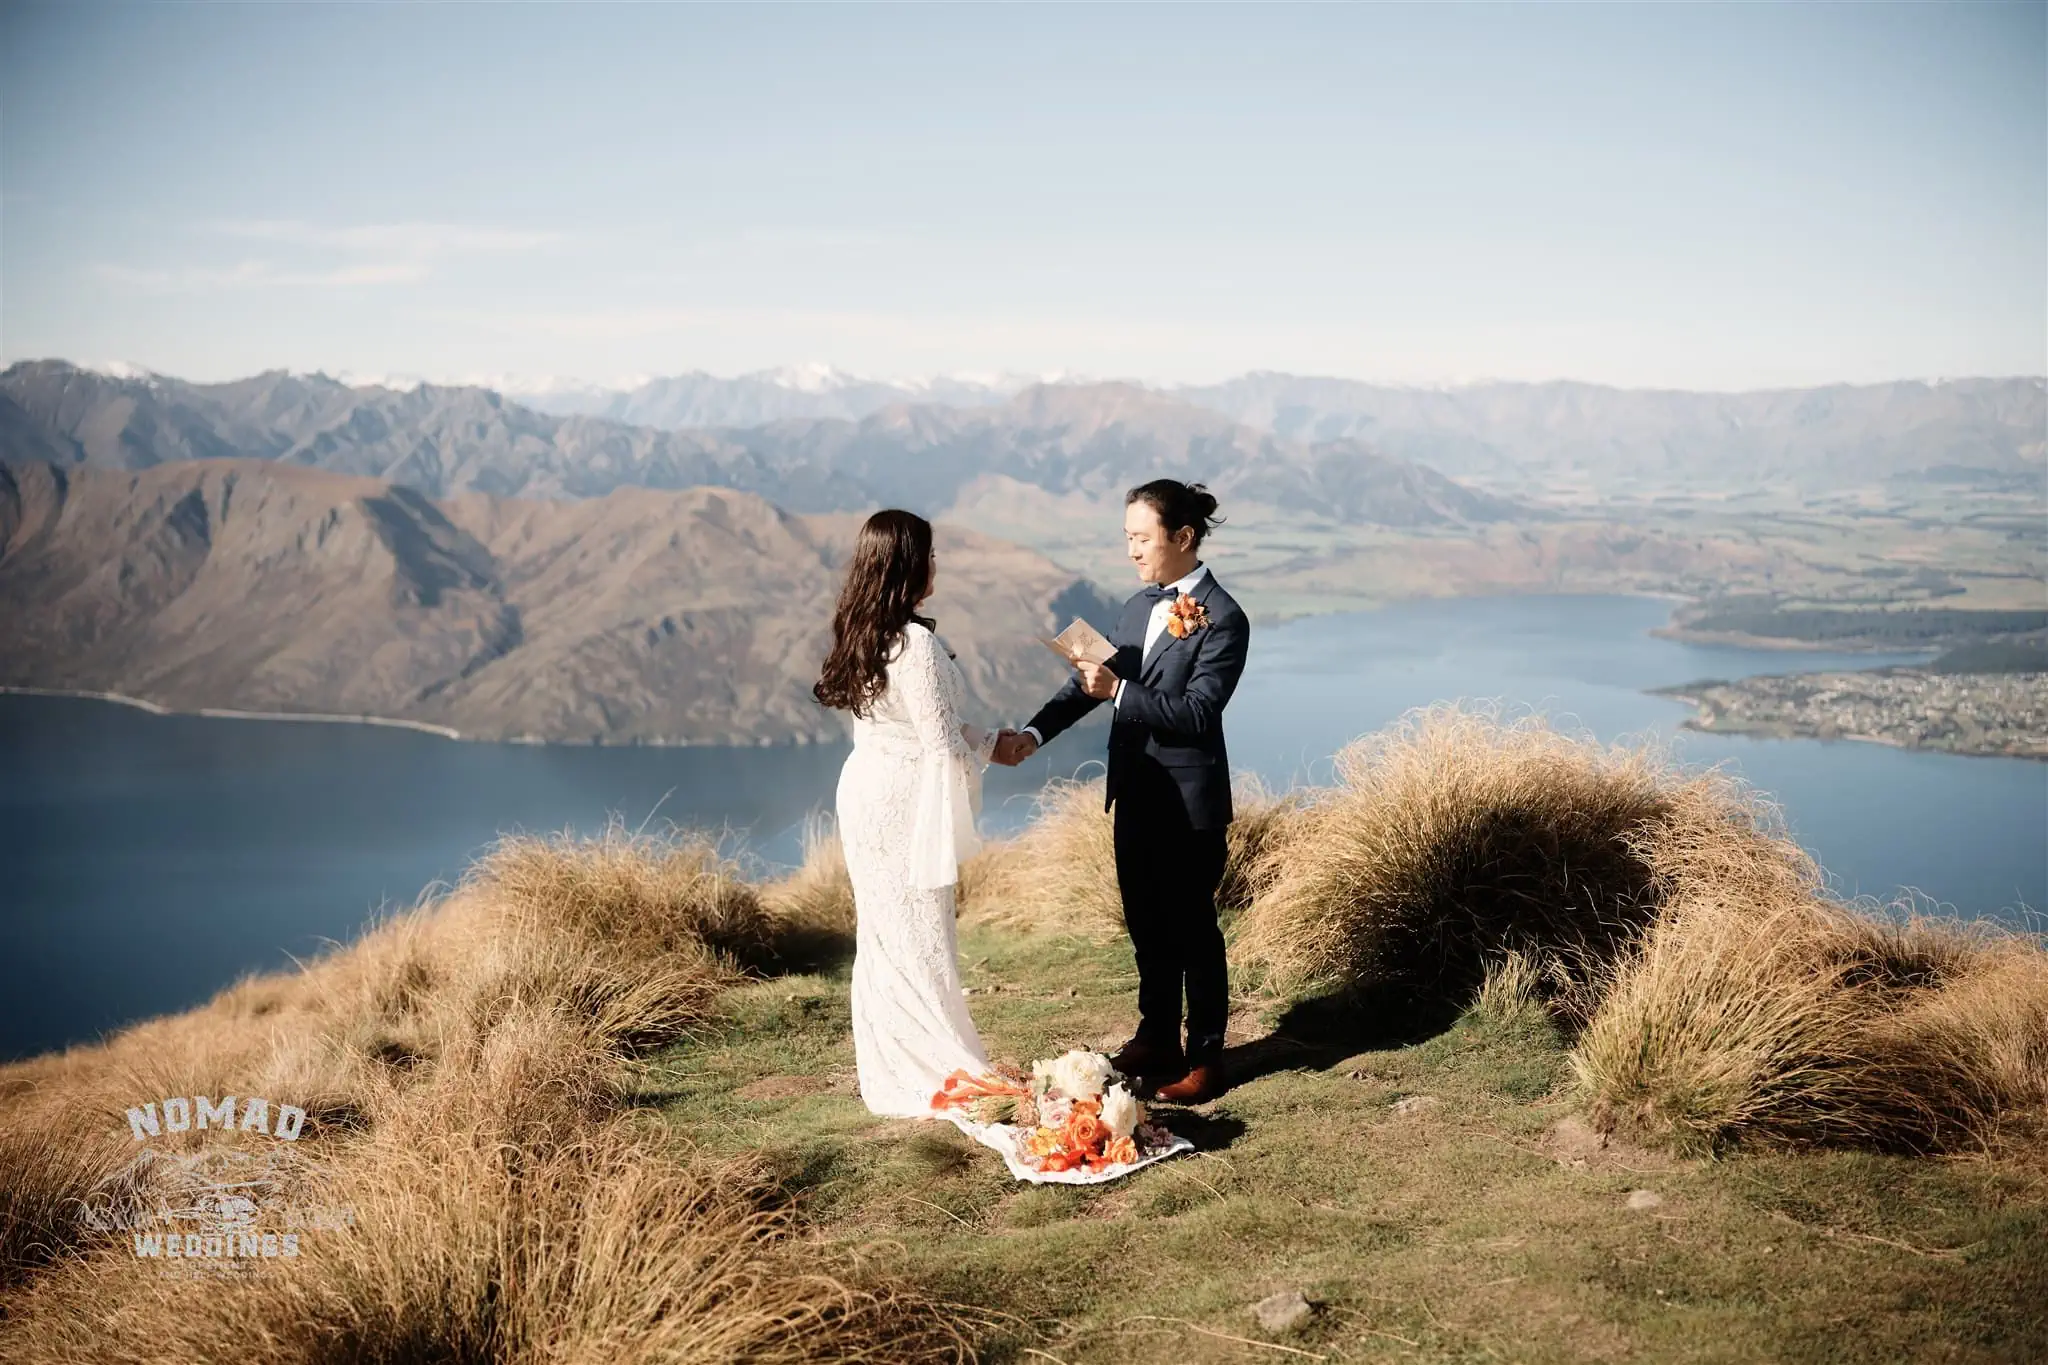 Queenstown New Zealand Coromandel Peak Heli Elopement Wedding Photographer.jpg